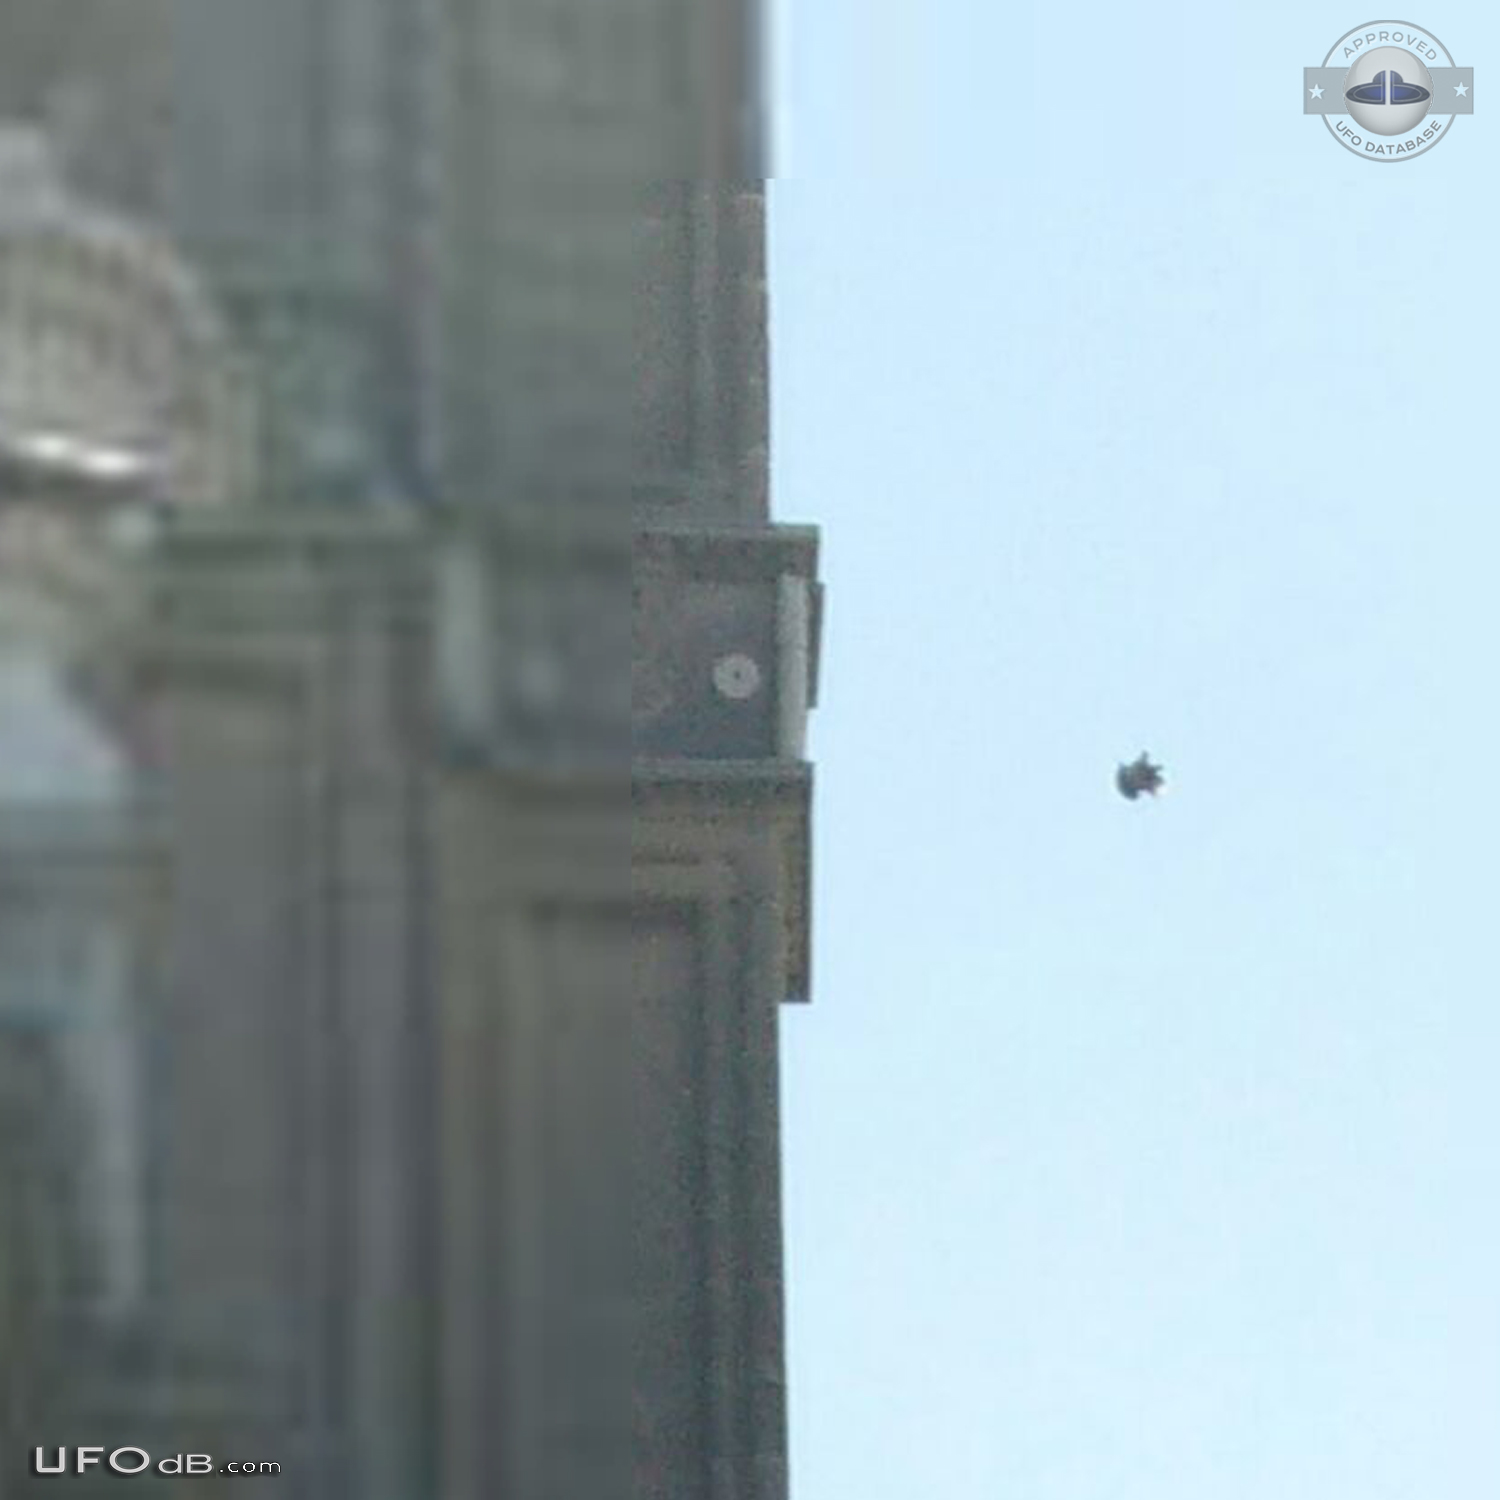 UFO caught on picture in Calle Arco de Palacio Toledo Spain 2015 UFO Picture #739-6